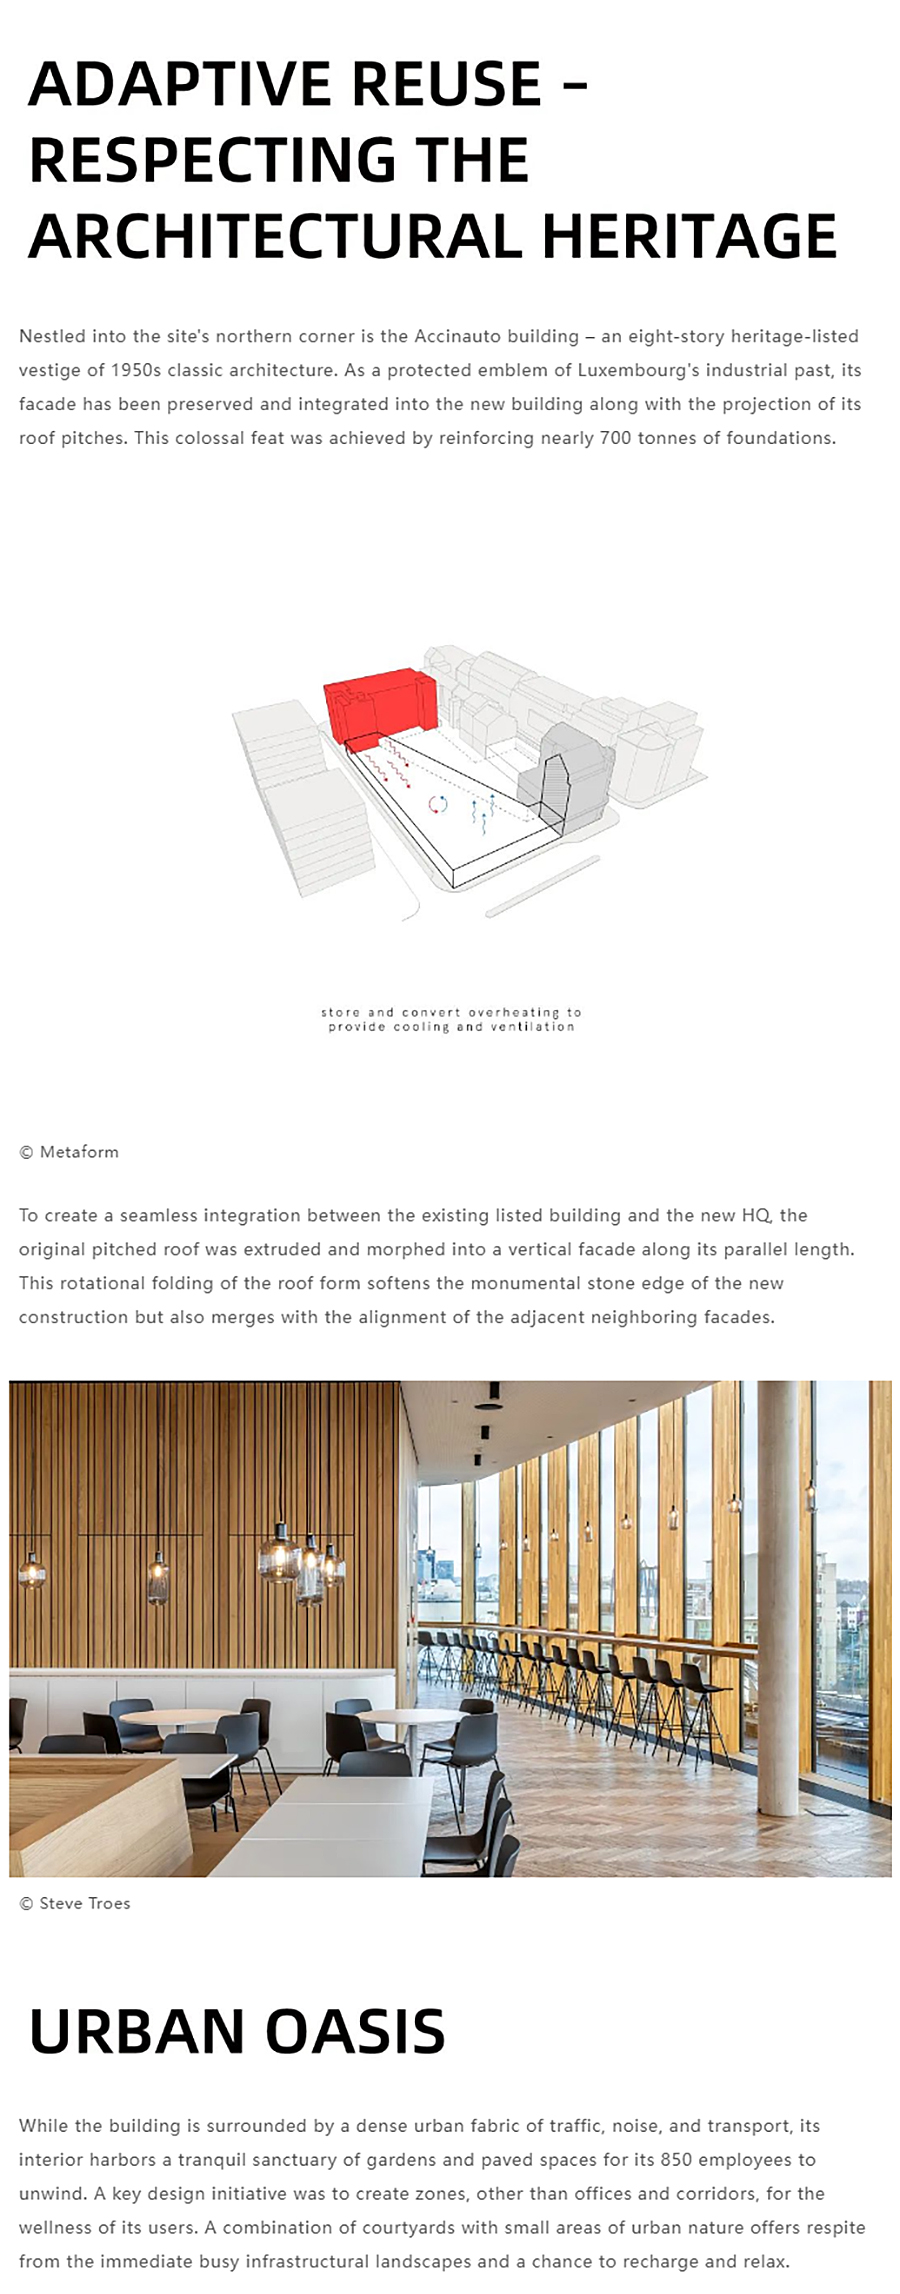 Renewal-Zone：卢森堡邮政电信总部︱尊重建筑遗产，融合打造净零碳建筑_0011_图层-12 拷贝.jpg